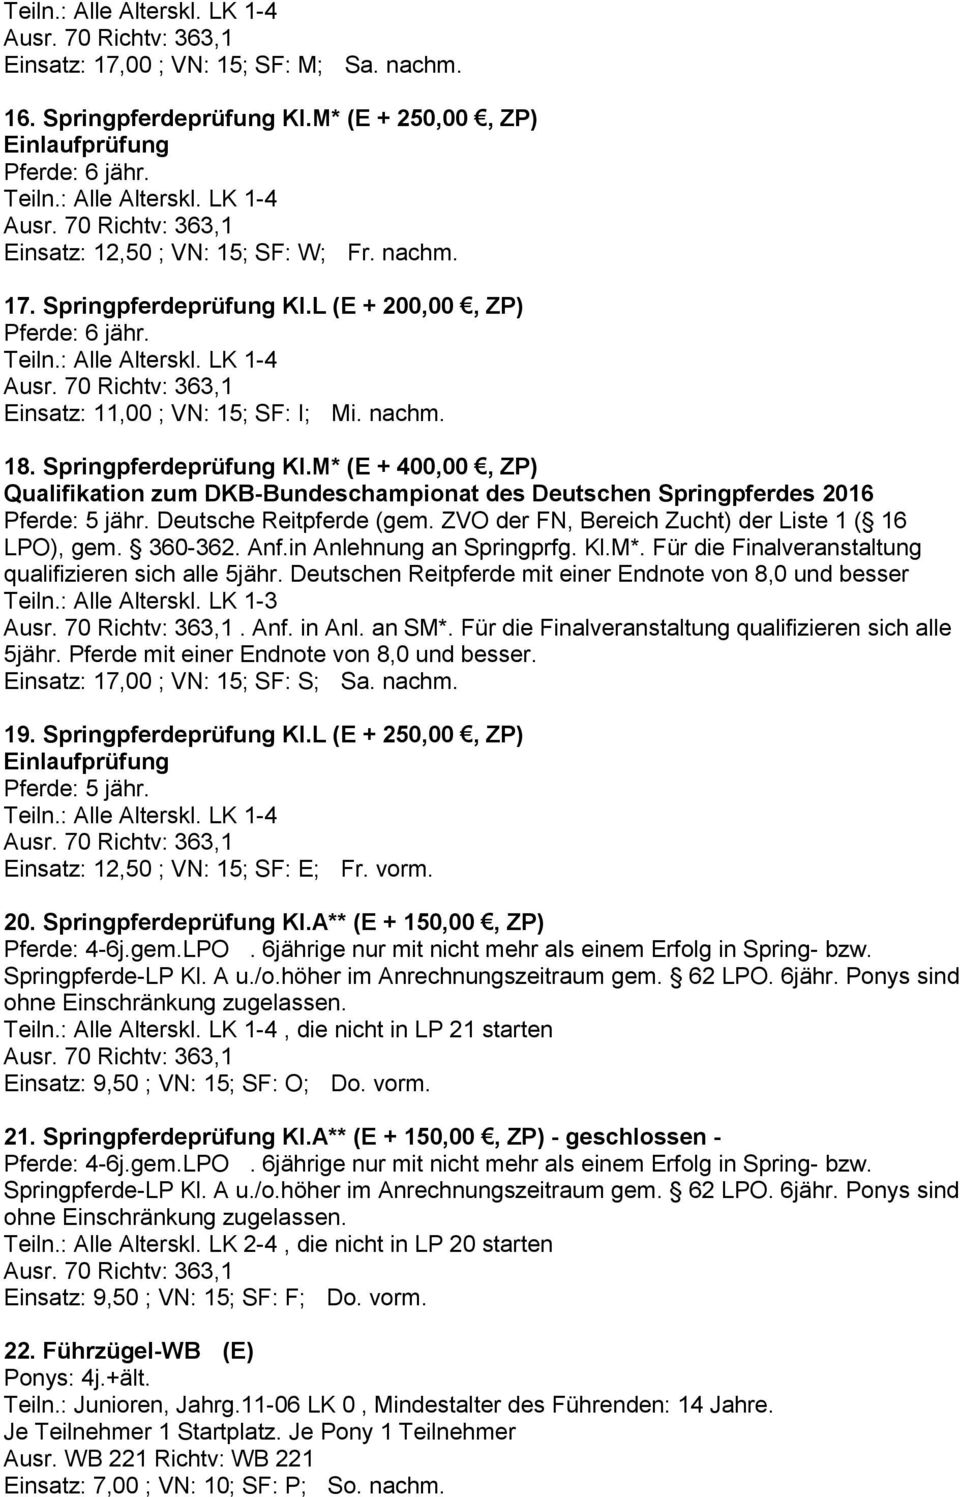 Deutsche Reitpferde (gem. ZVO der FN, Bereich Zucht) der Liste 1 ( 16 LPO), gem. 360-362. Anf.in Anlehnung an Springprfg. Kl.M*. Für die Finalveranstaltung qualifizieren sich alle 5jähr.